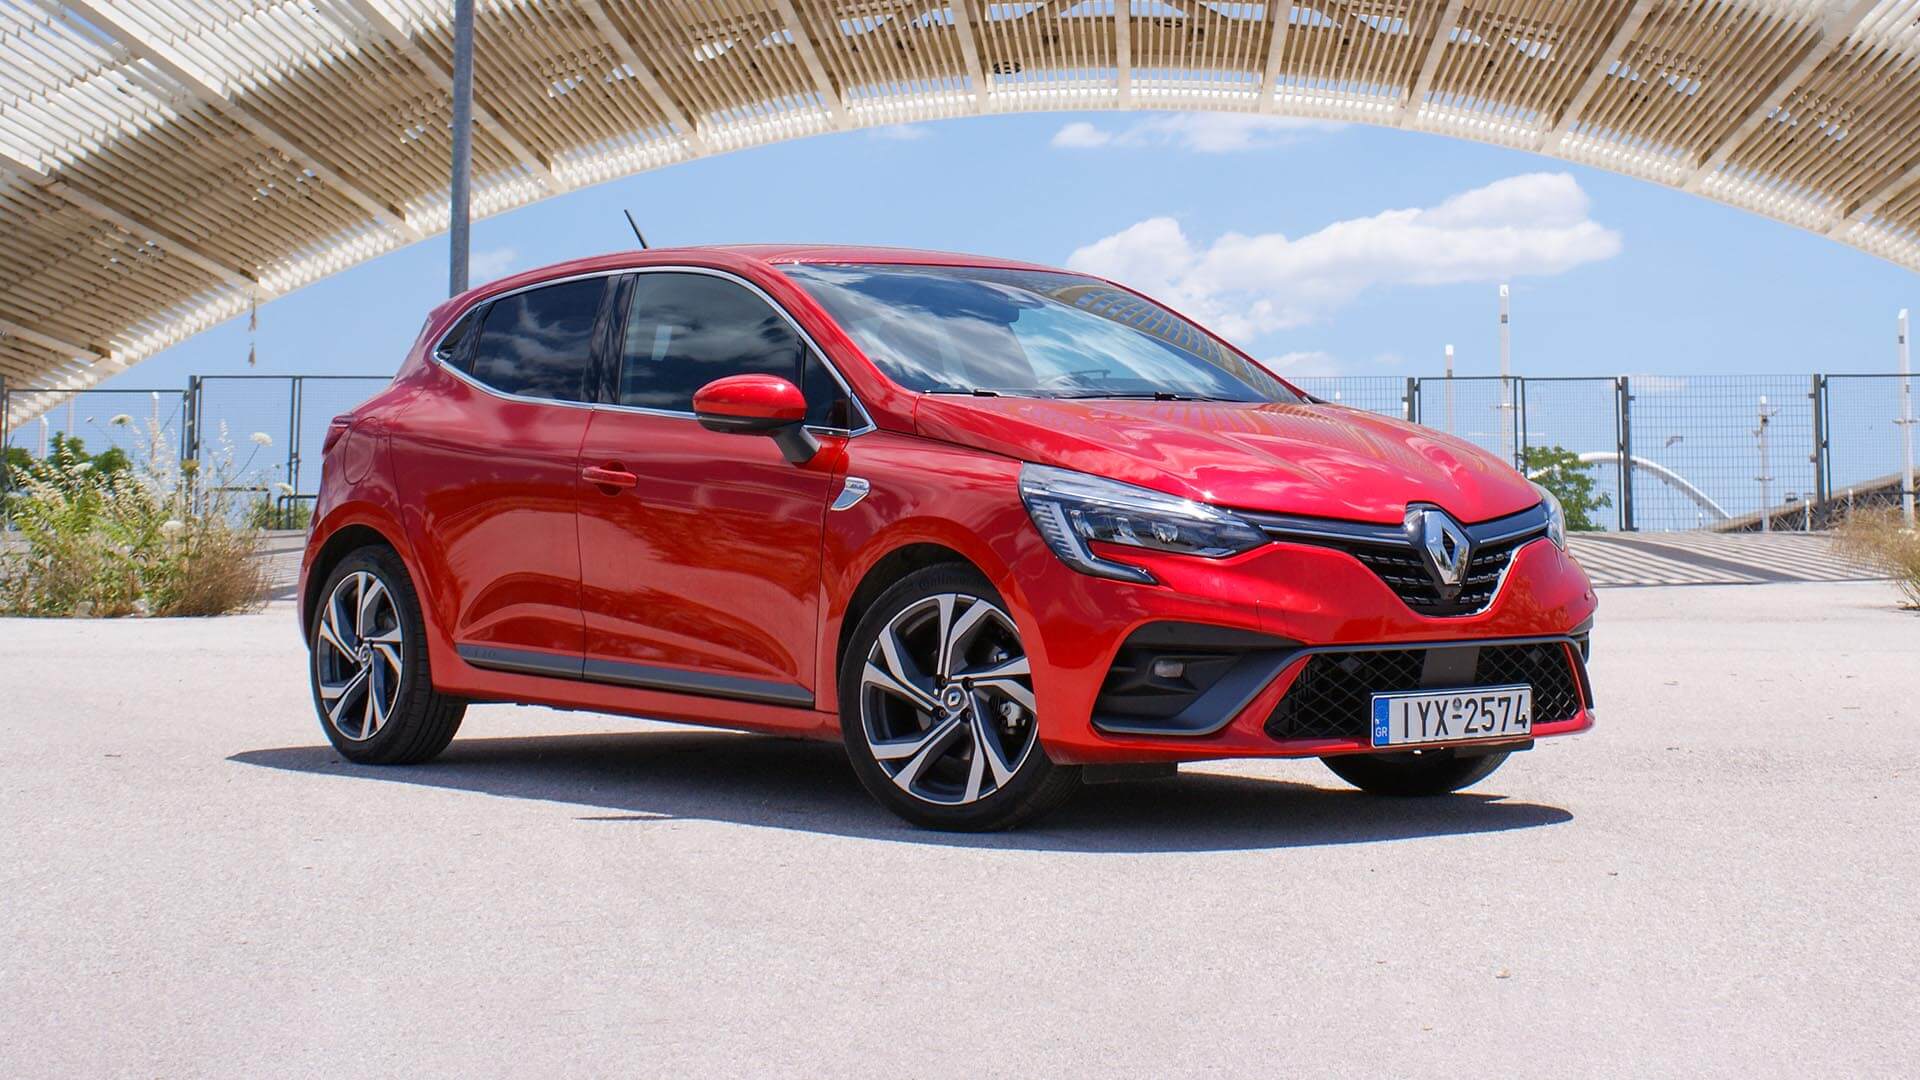 Οι έξυπνοι παίρνουν το νέο Renault Clio και κερδίζουν έως 2.500 ευρώ!